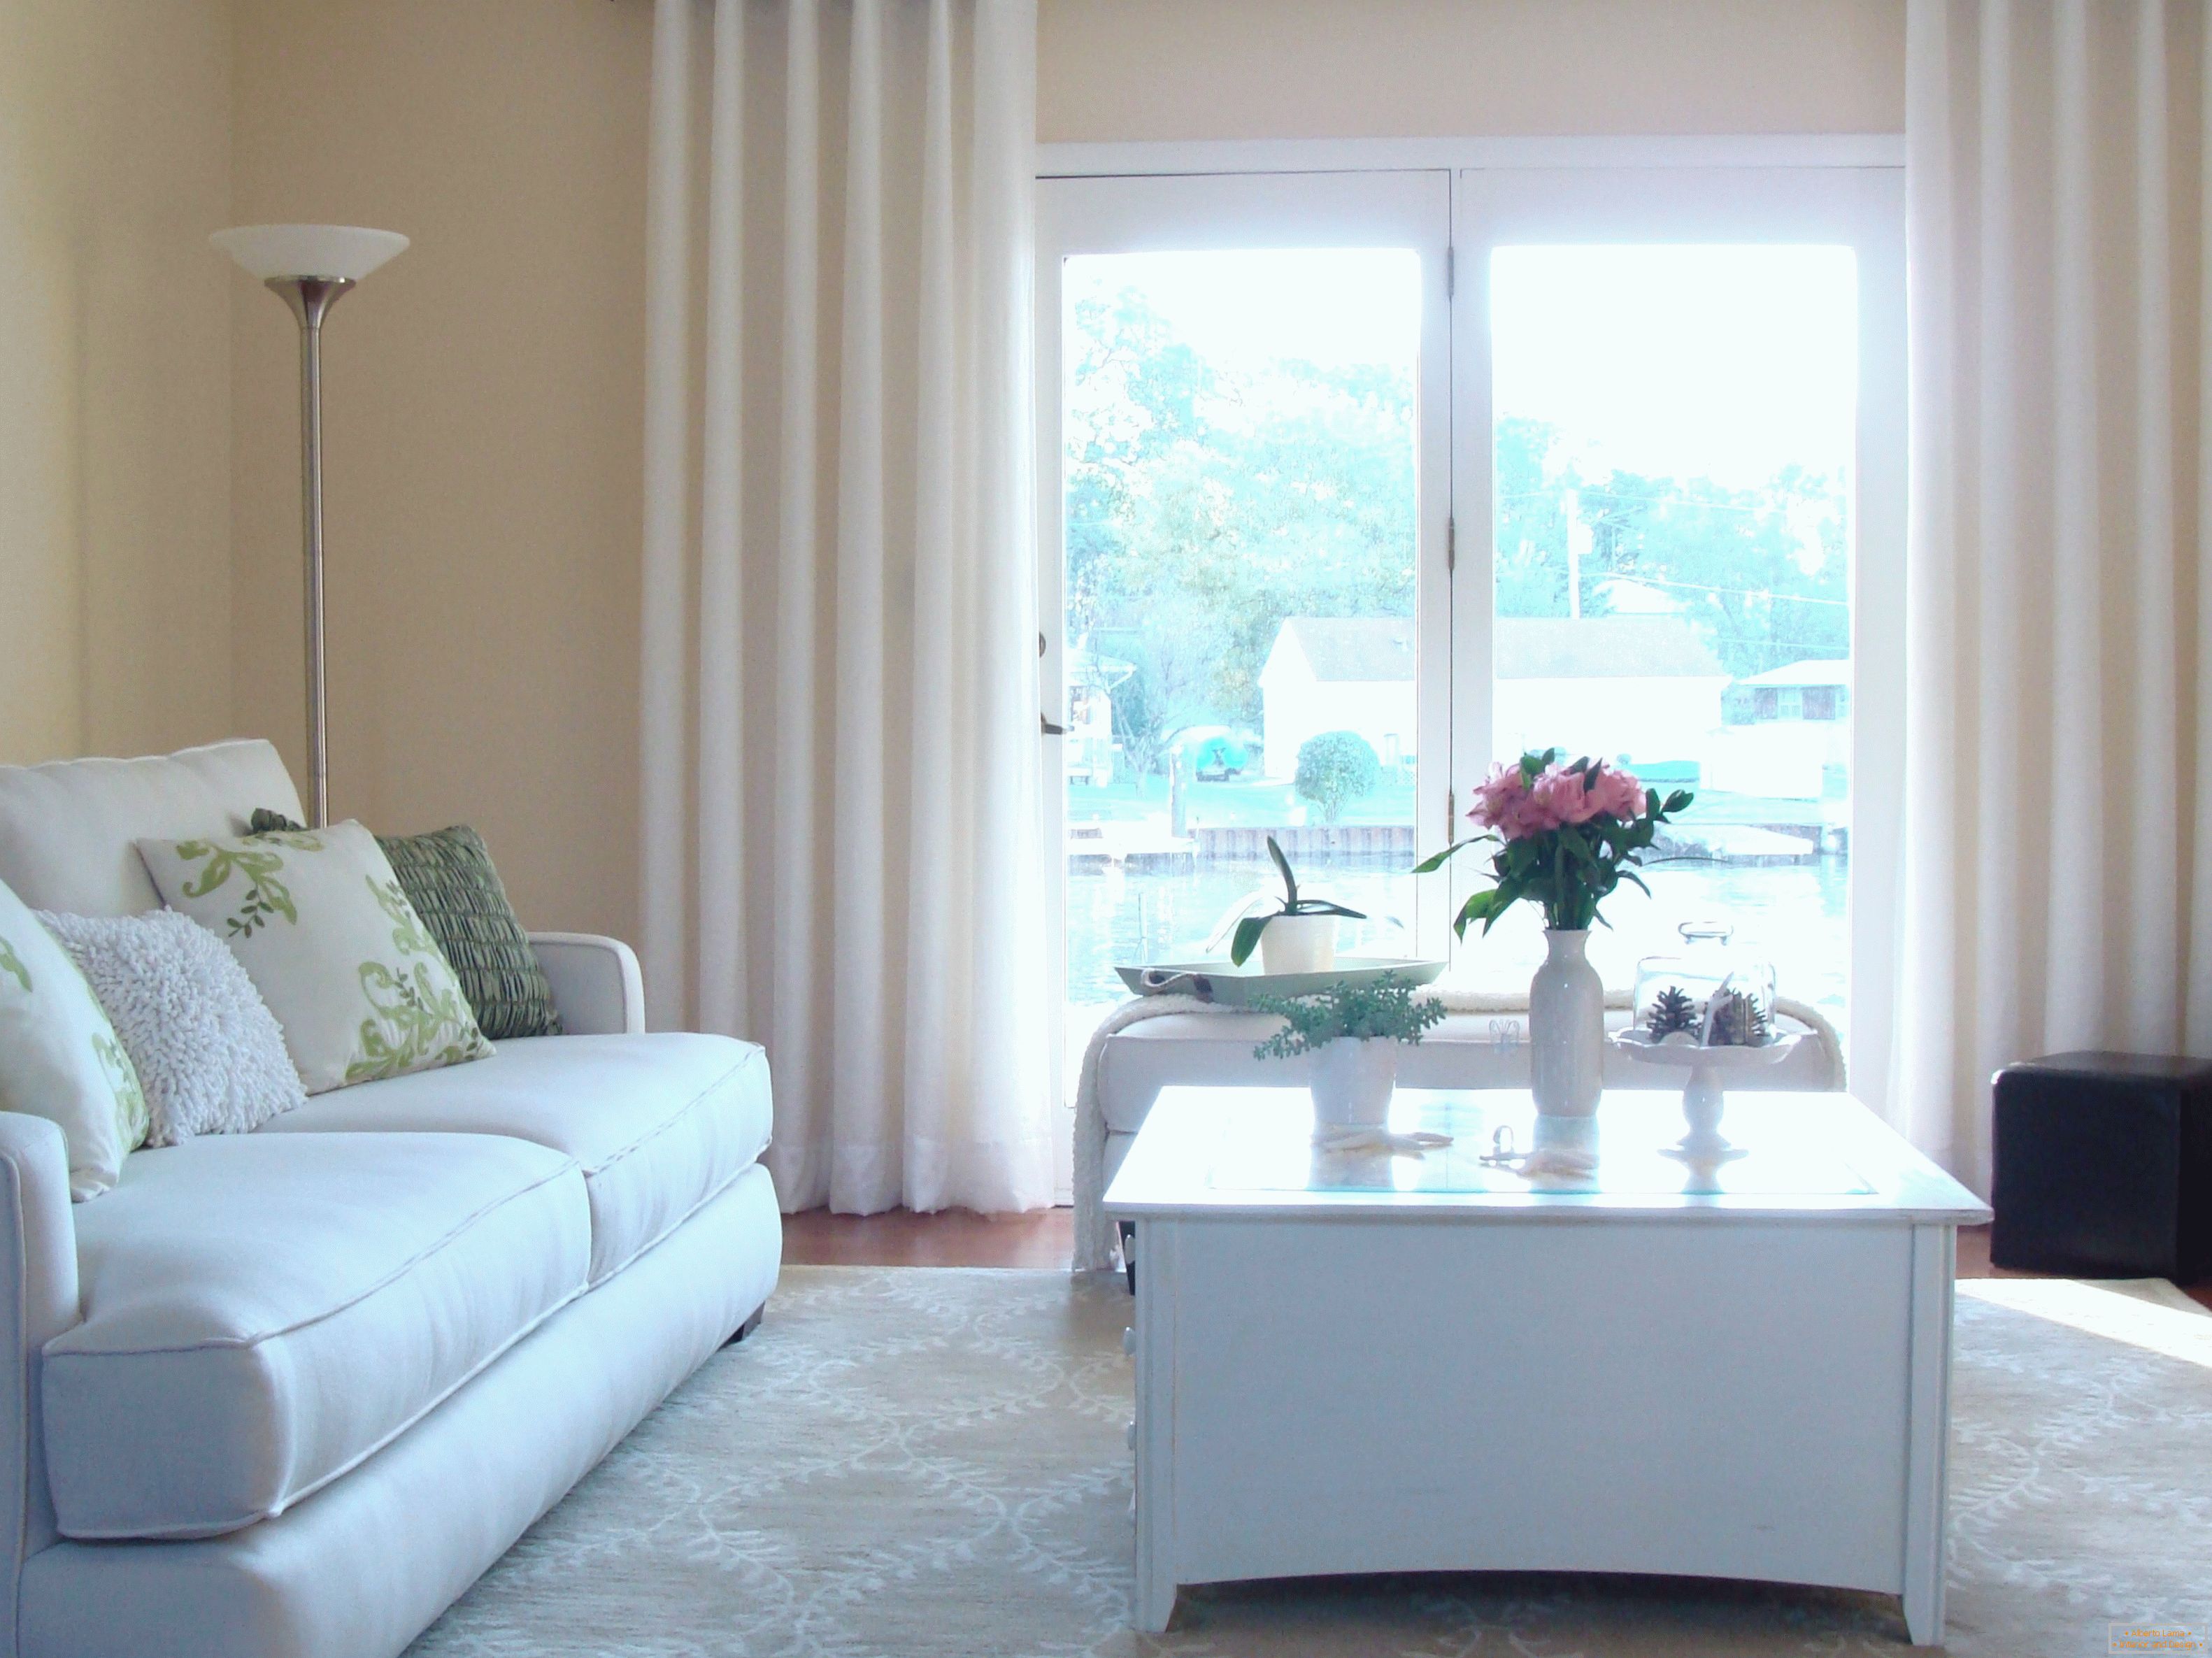 Sala de estar de decoración simple con cortinas blancas